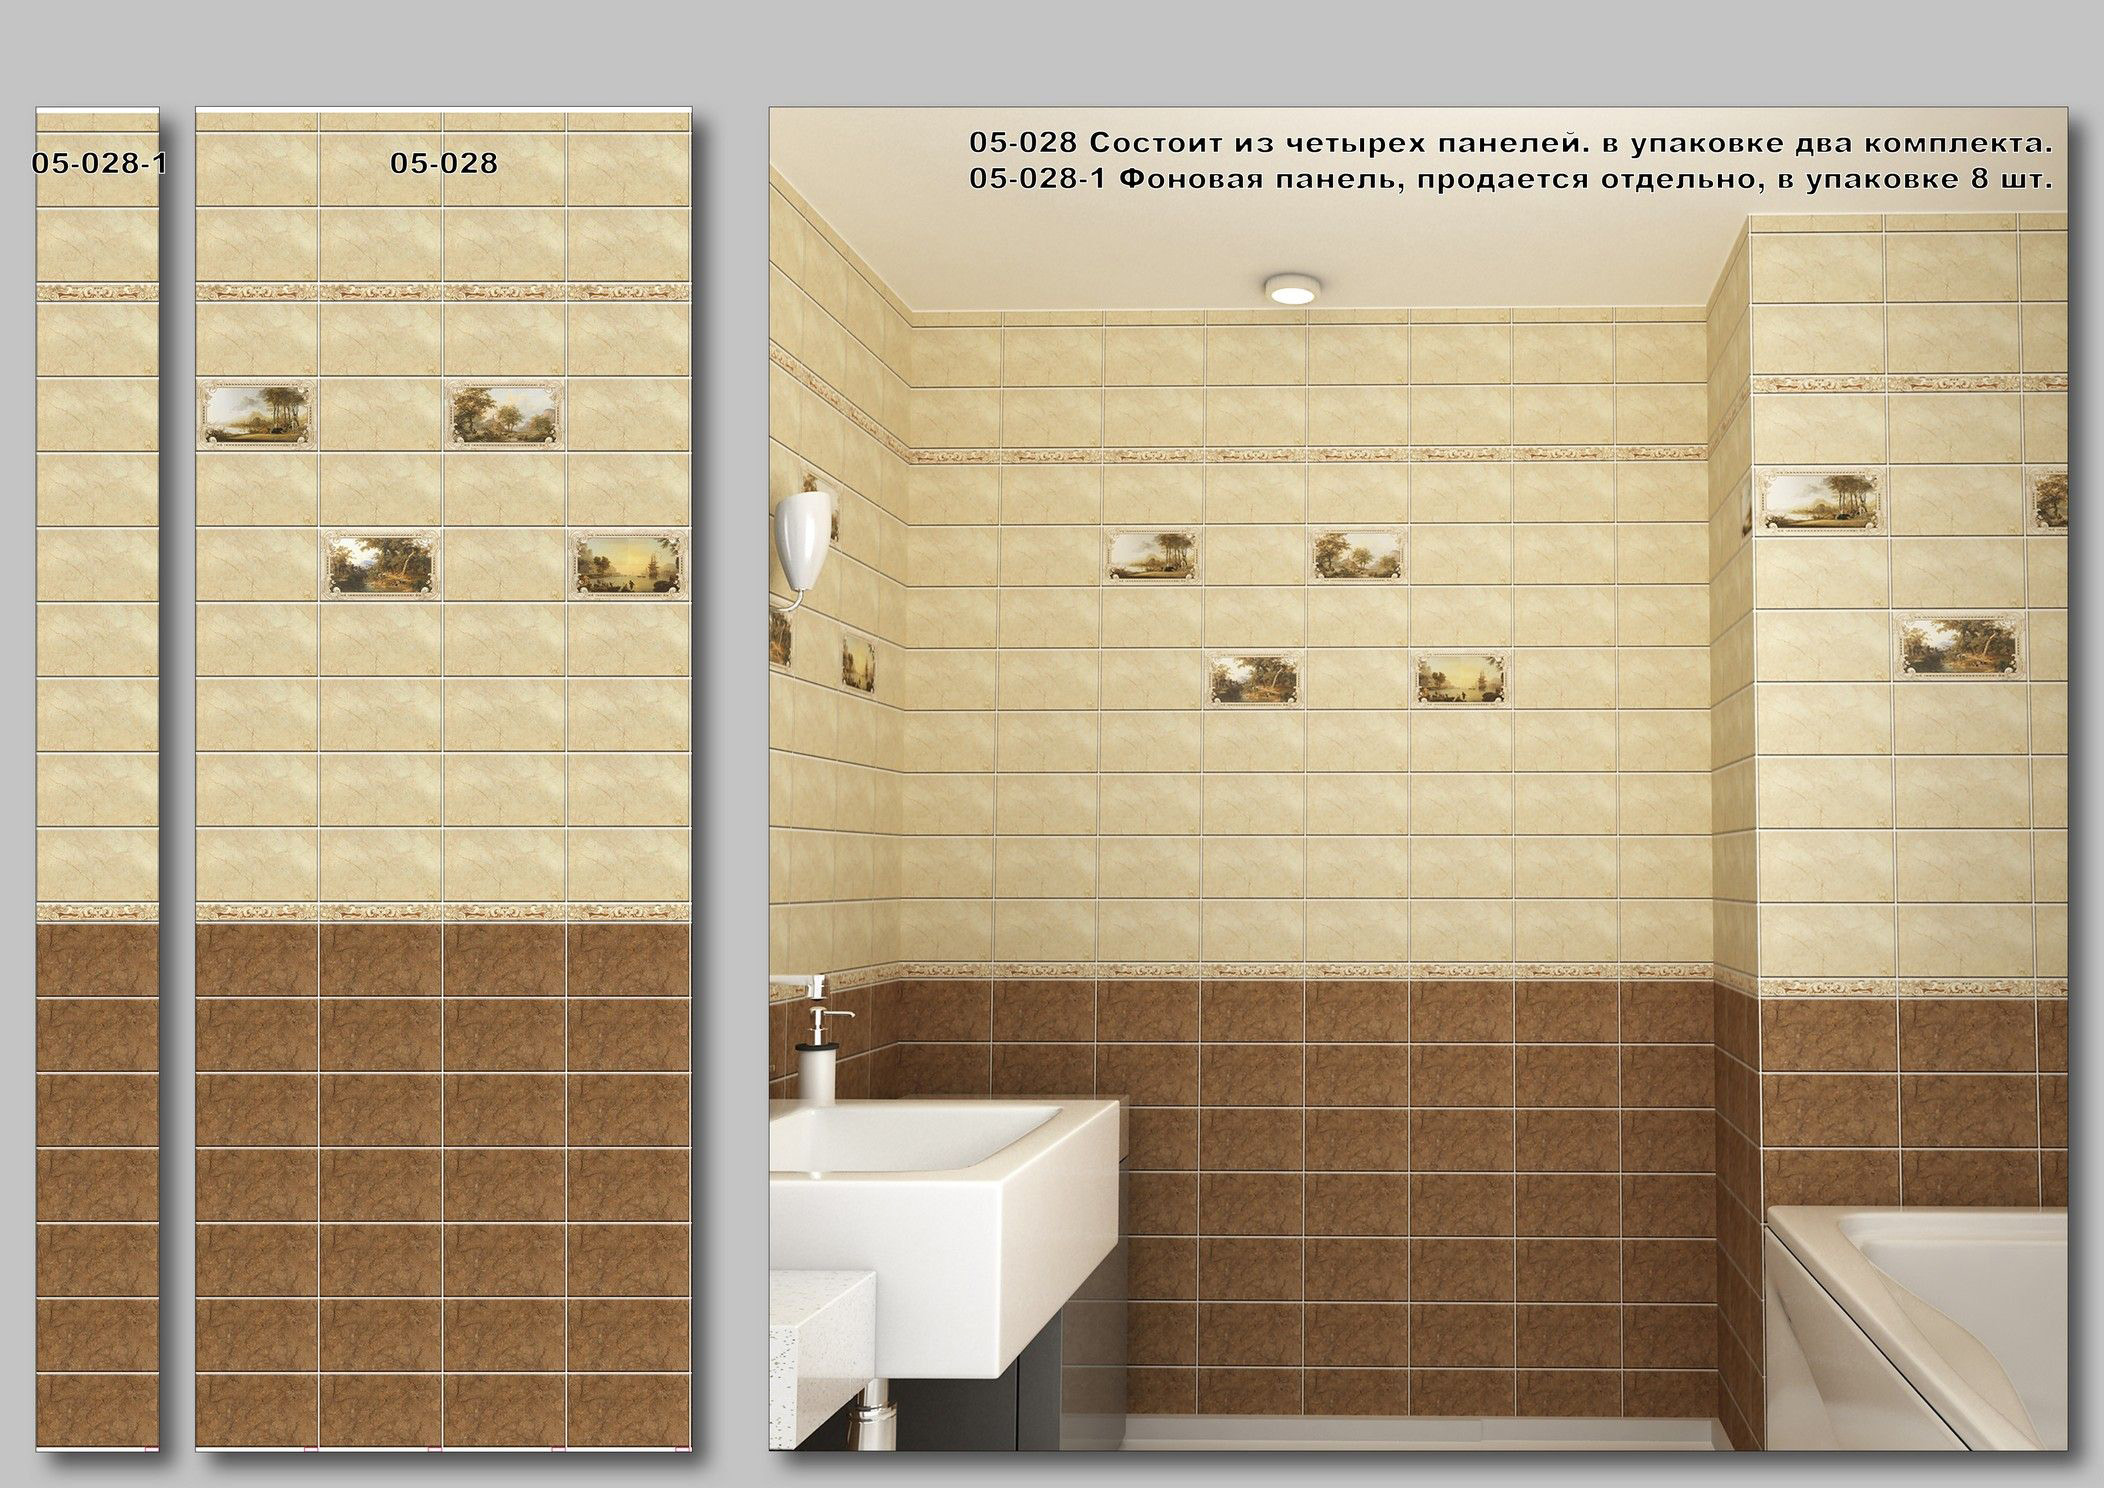 Как подобрать влагостойкие стеновые панели для ванной комнаты по размерам и материалу + фото